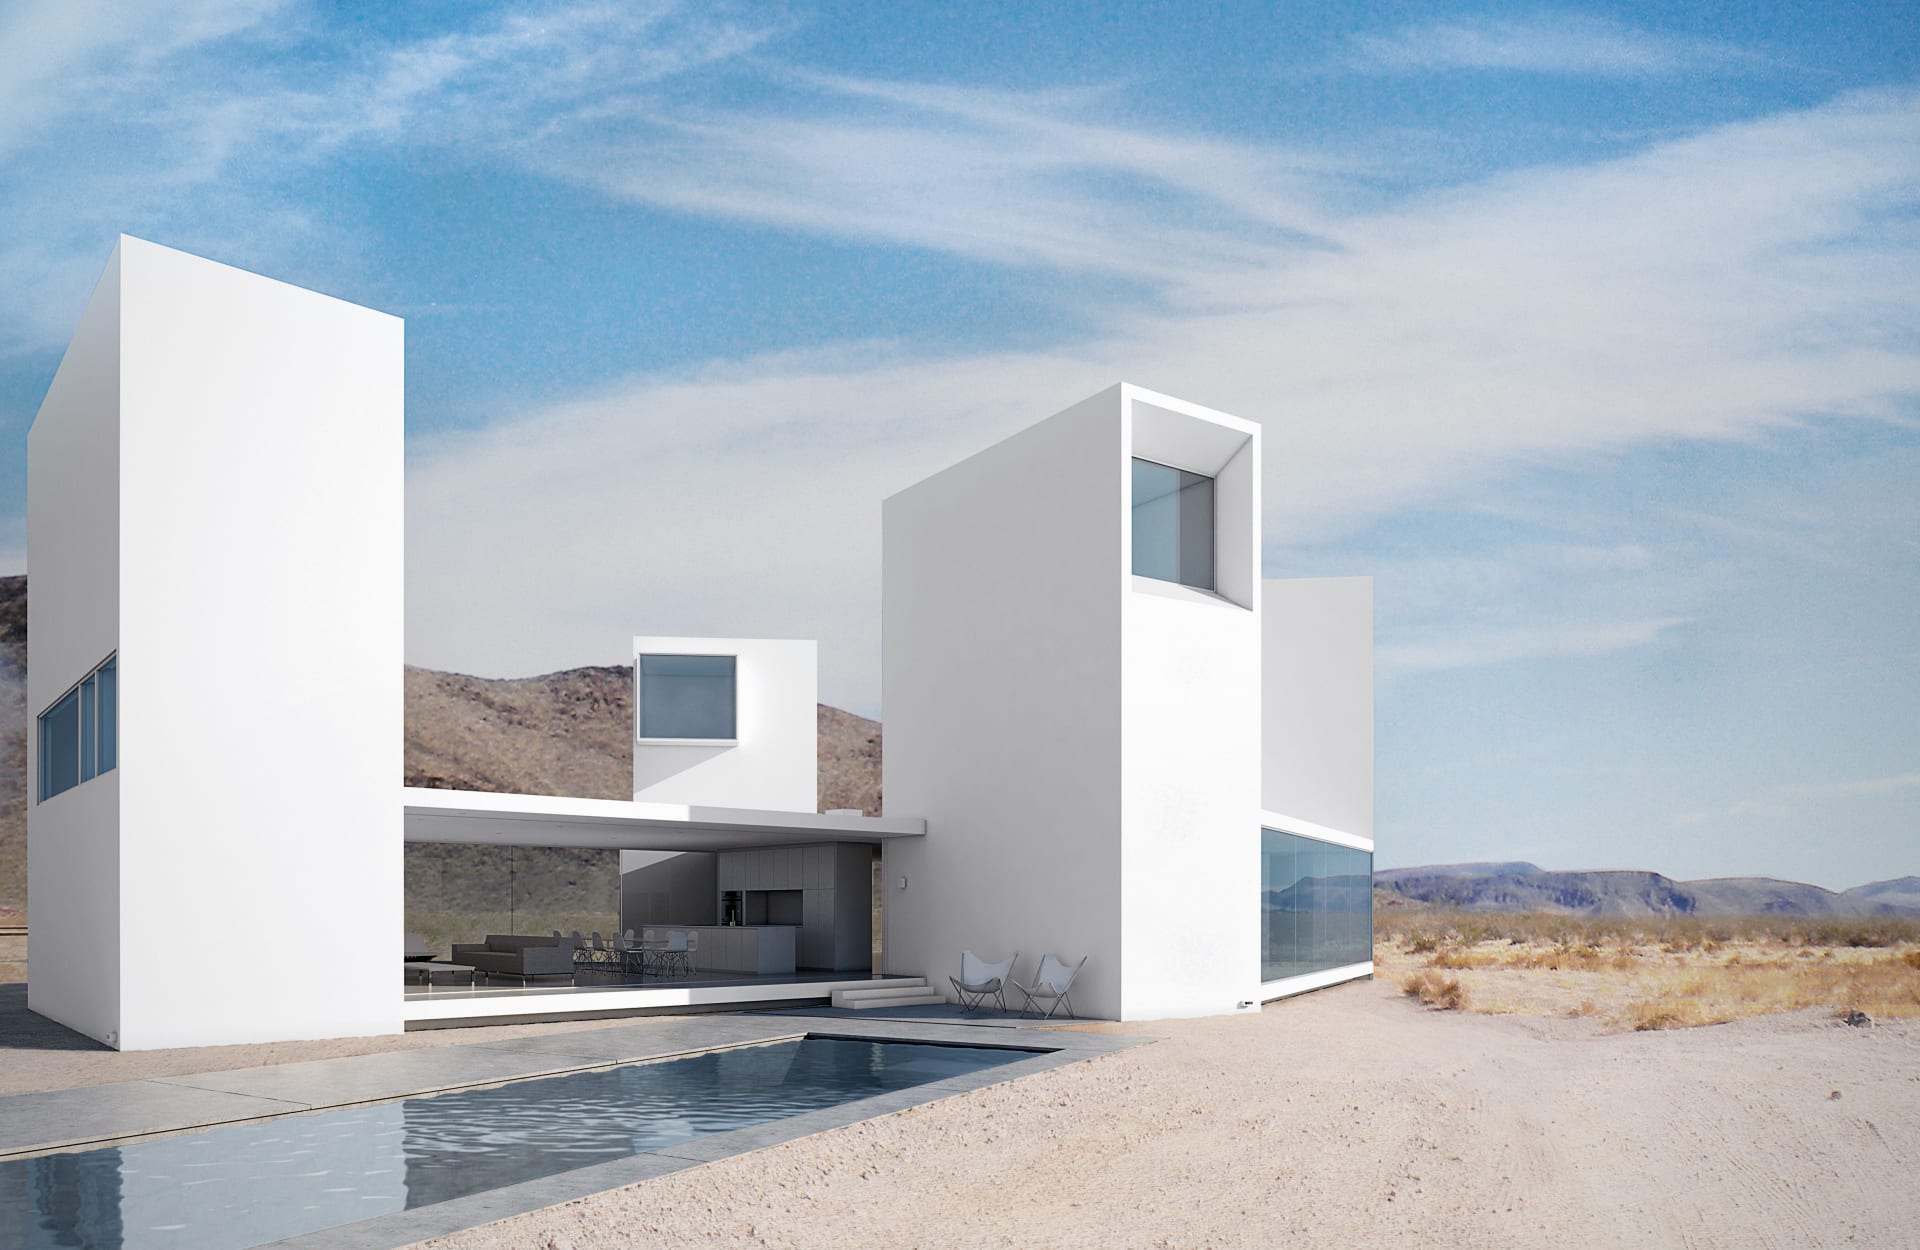 واحات معمارية في وسط الصحاري.. كيف غيرت مفهوم العيش في الصحراء؟